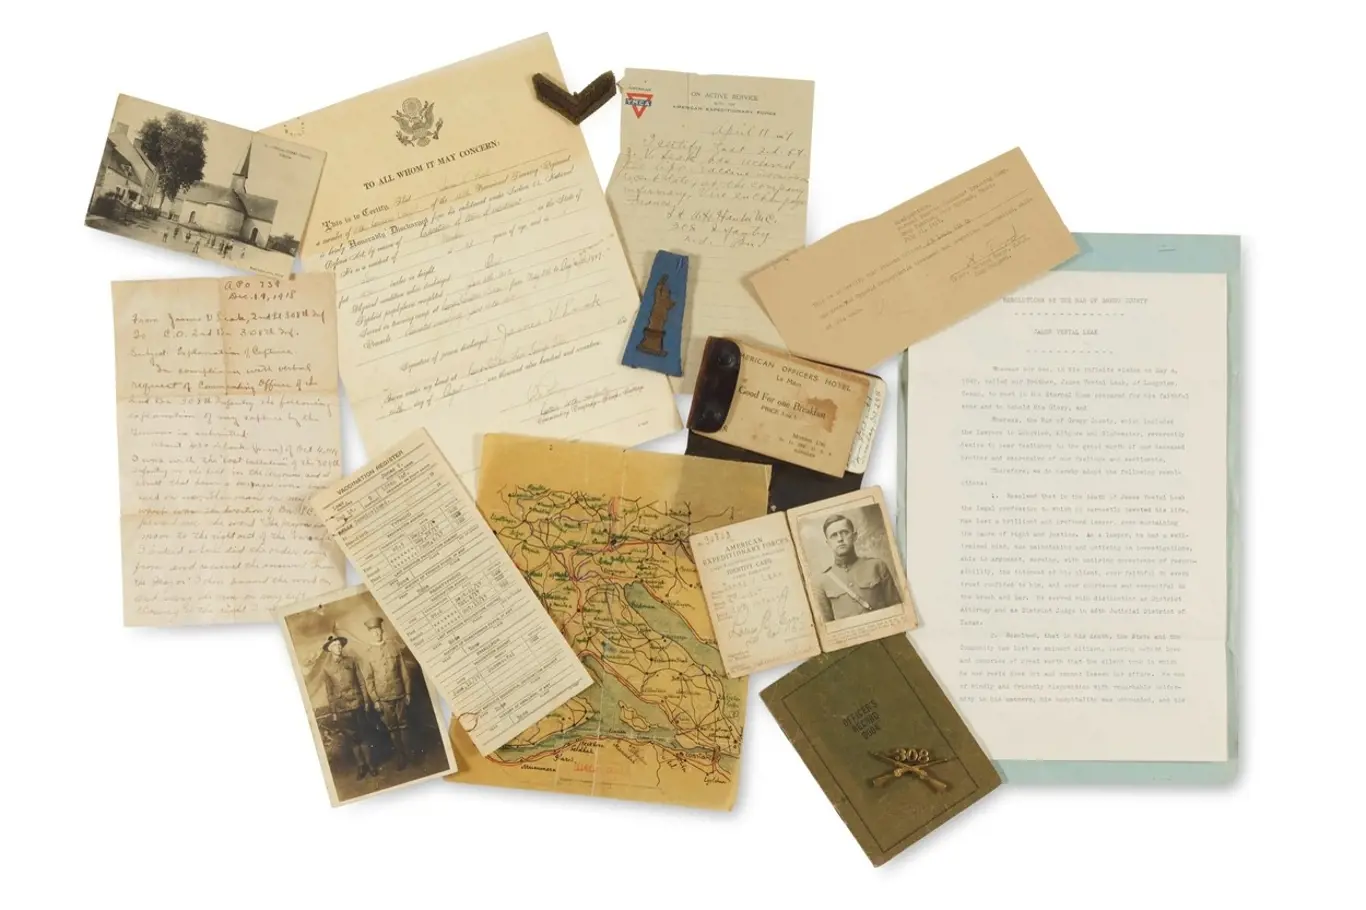 Dopisy z vojny jsou cenným historickým materiálem